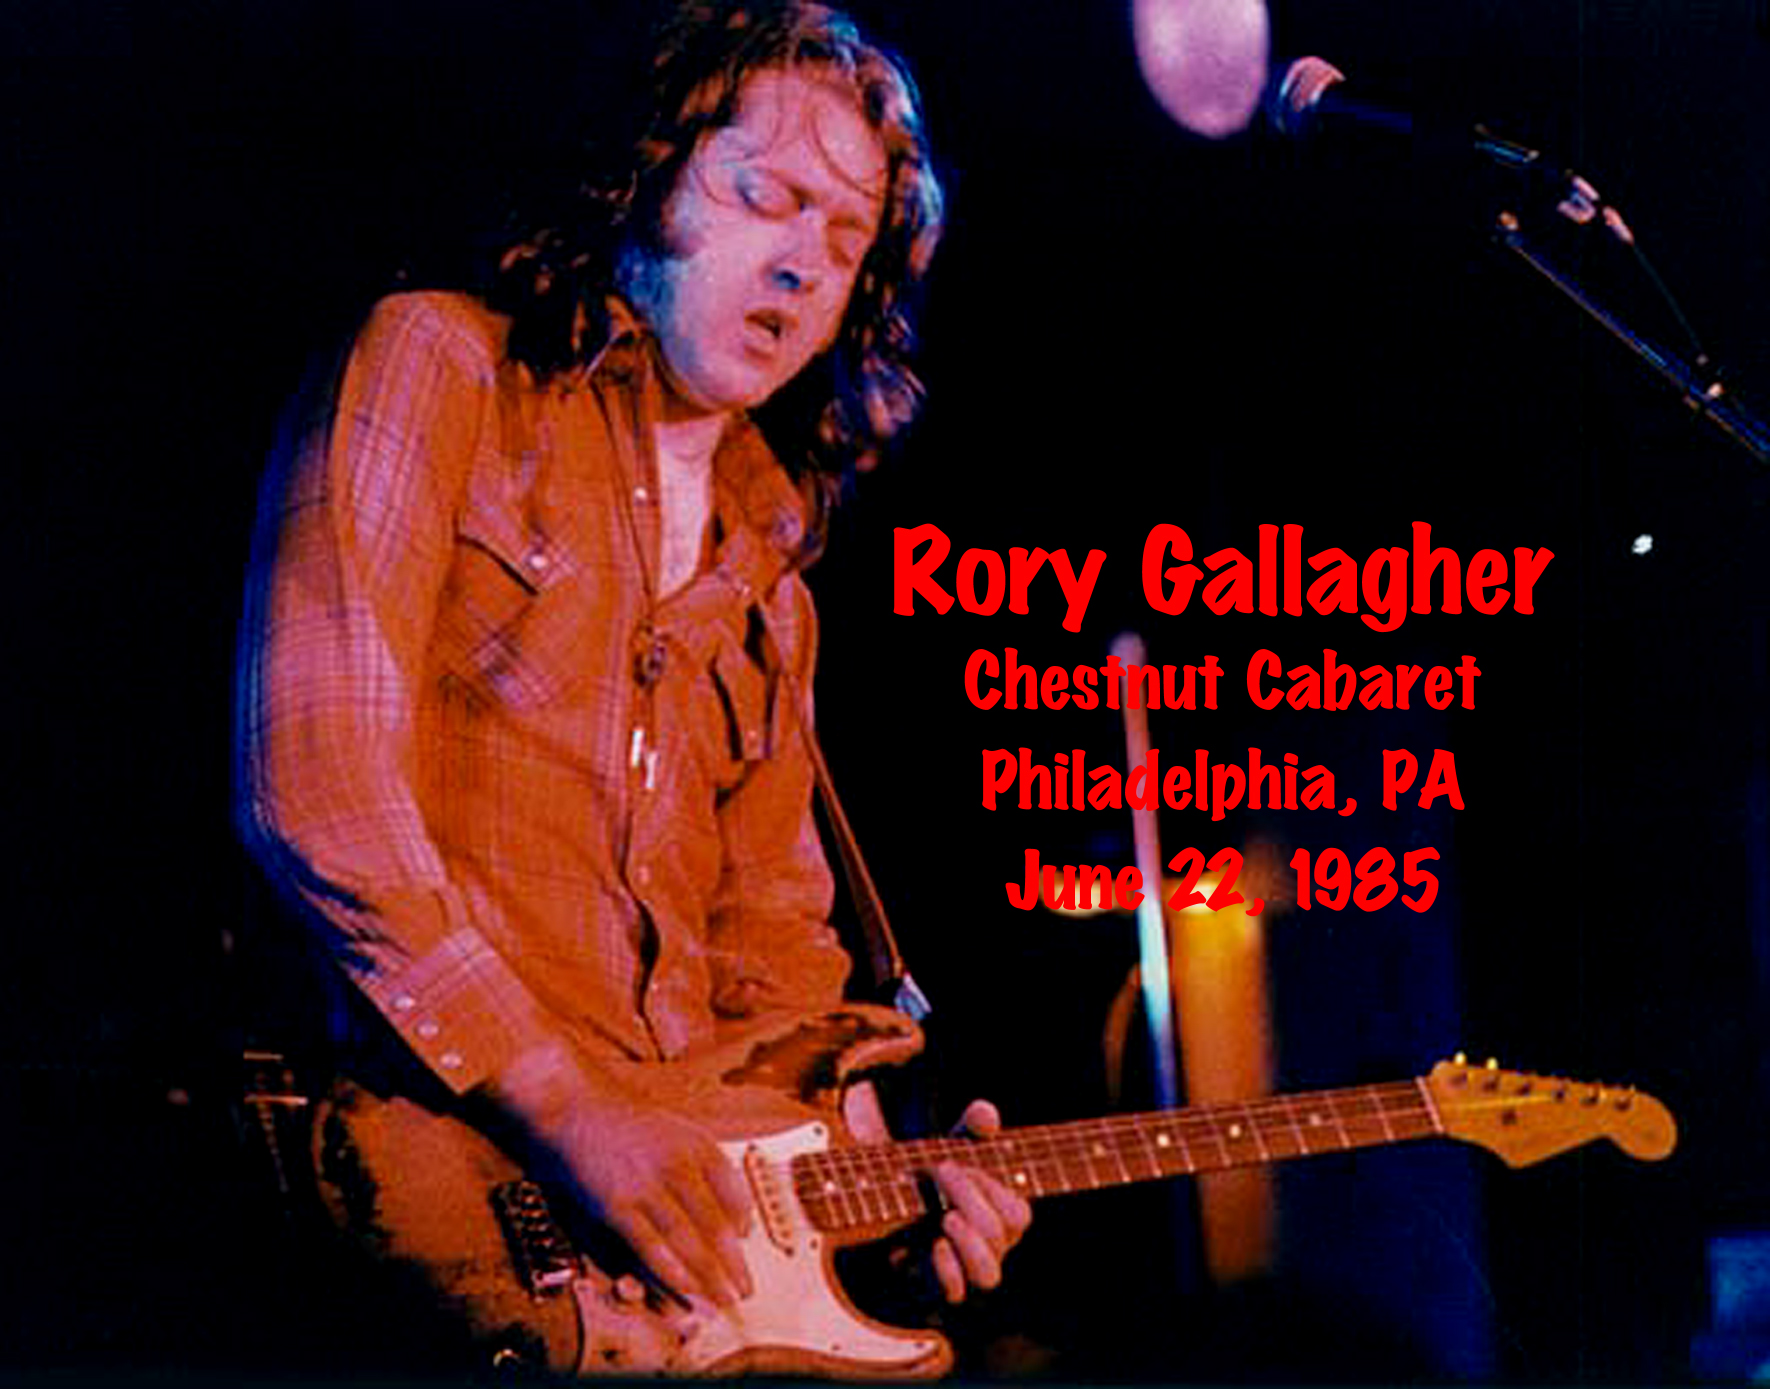 RoryGallagher1985-06-22ChestnutCabaretPhiladelphiaPA (2).jpg